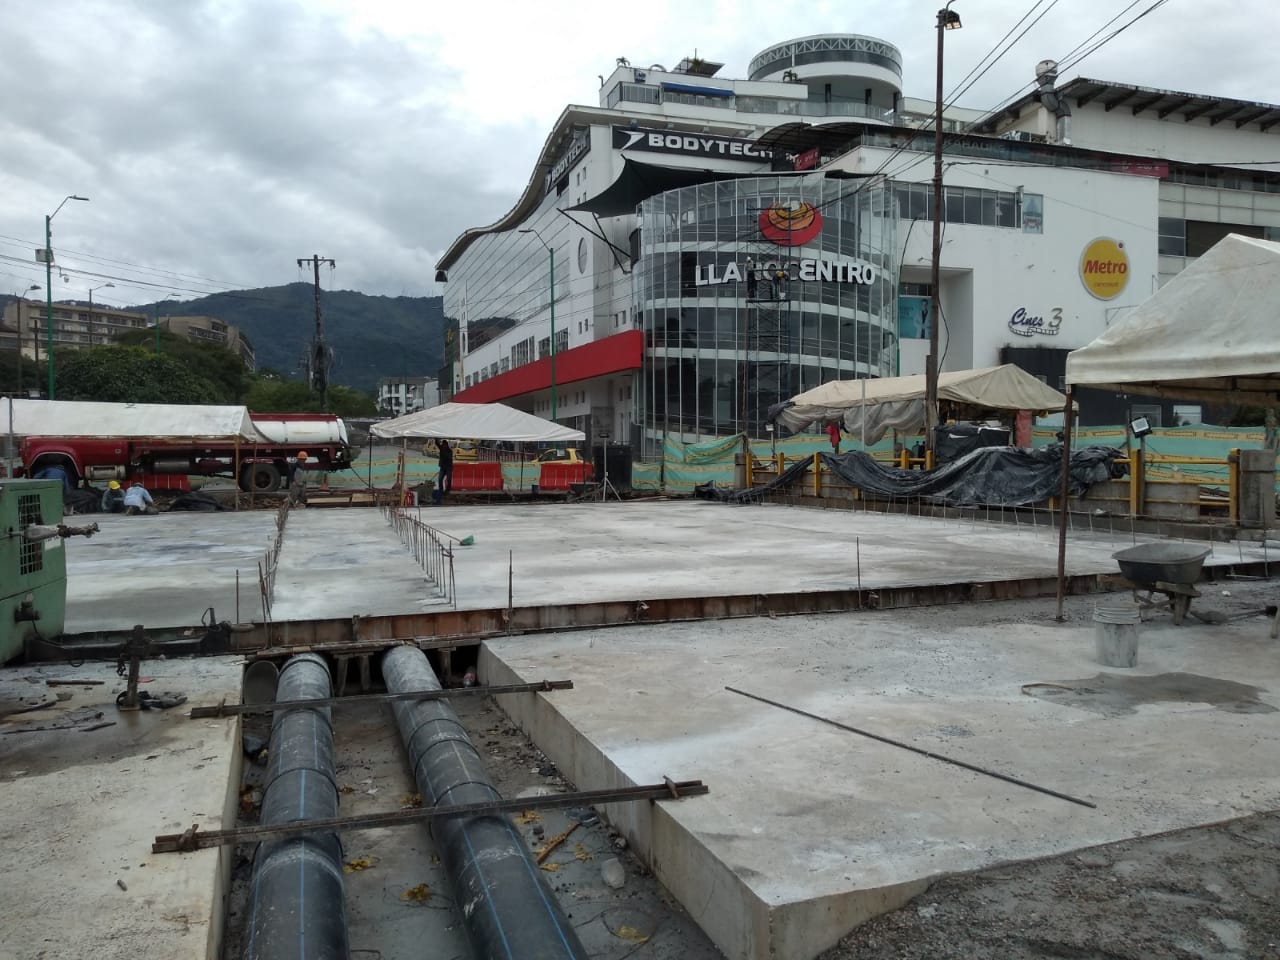 La próxima semana se pondrá en uso el nuevo puente de Villacentro 1